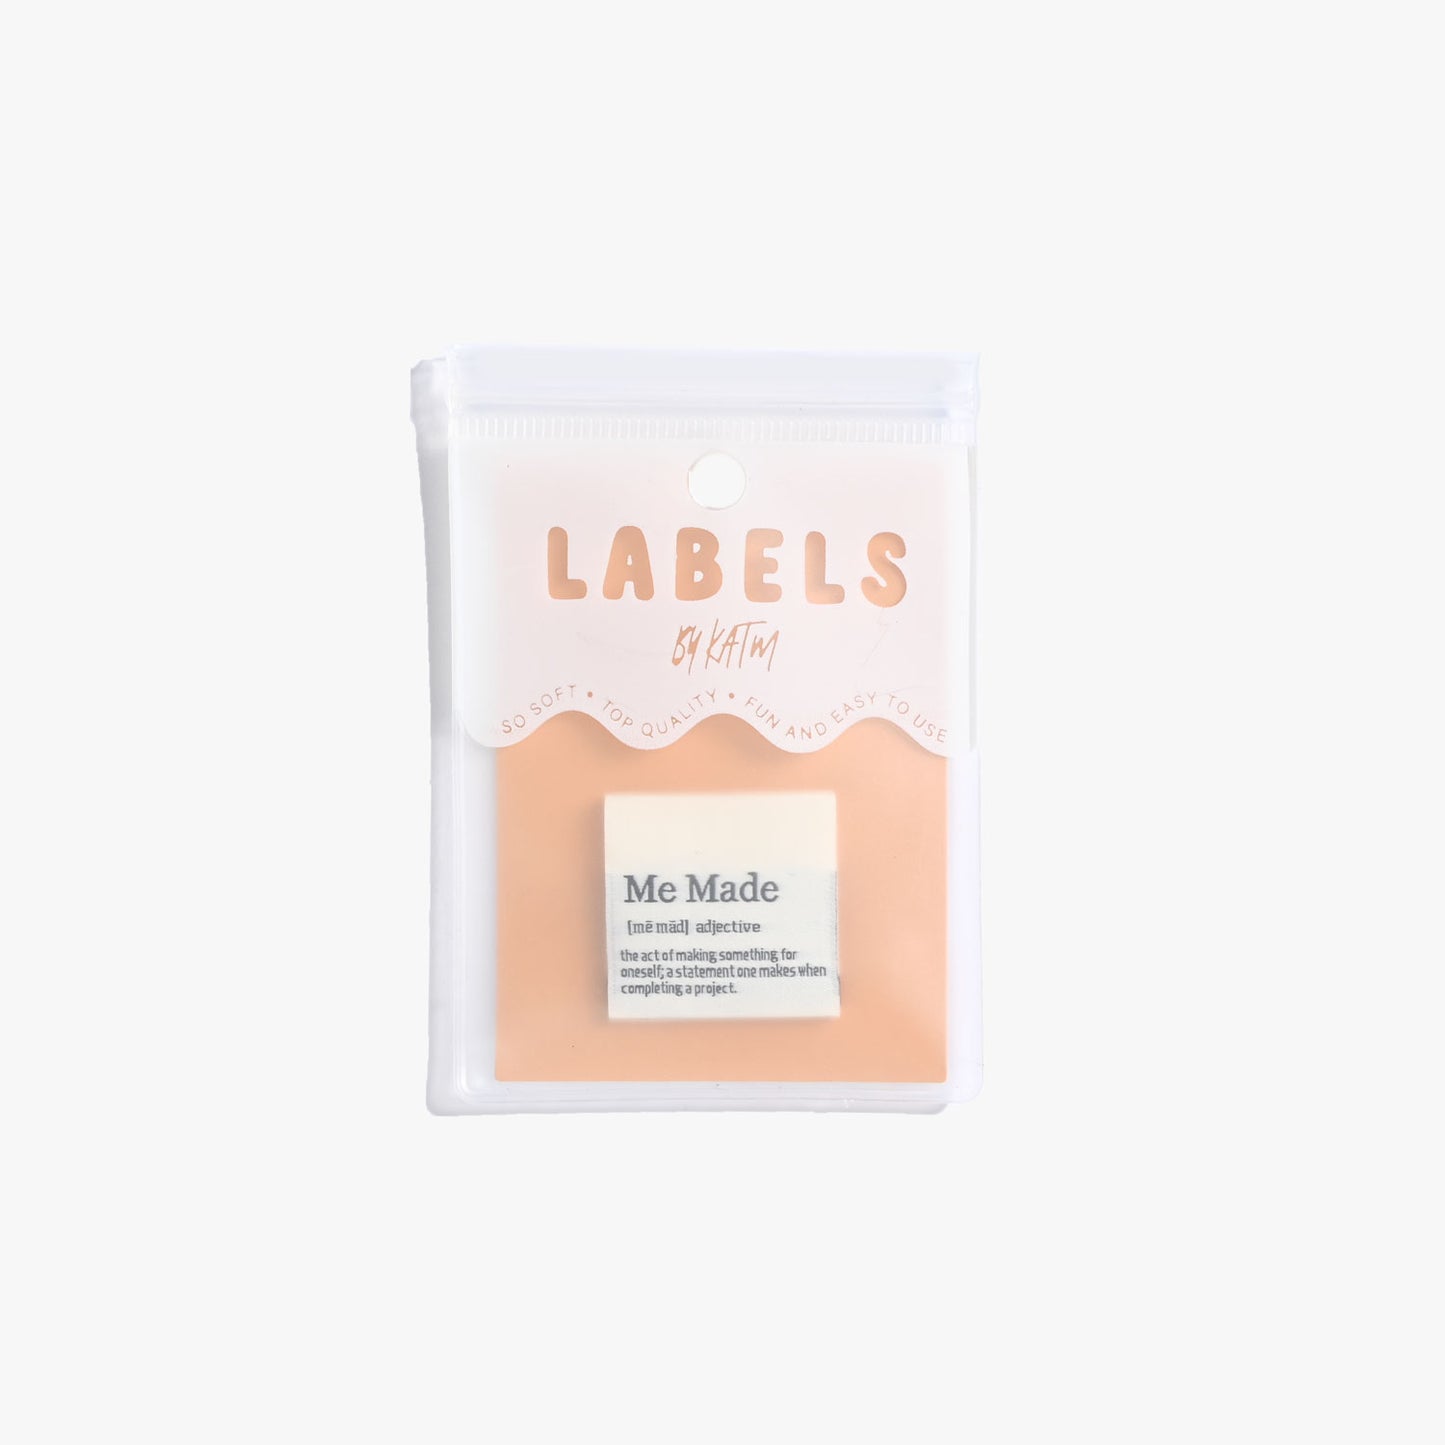 “Me Made Definition” Labels – KATM